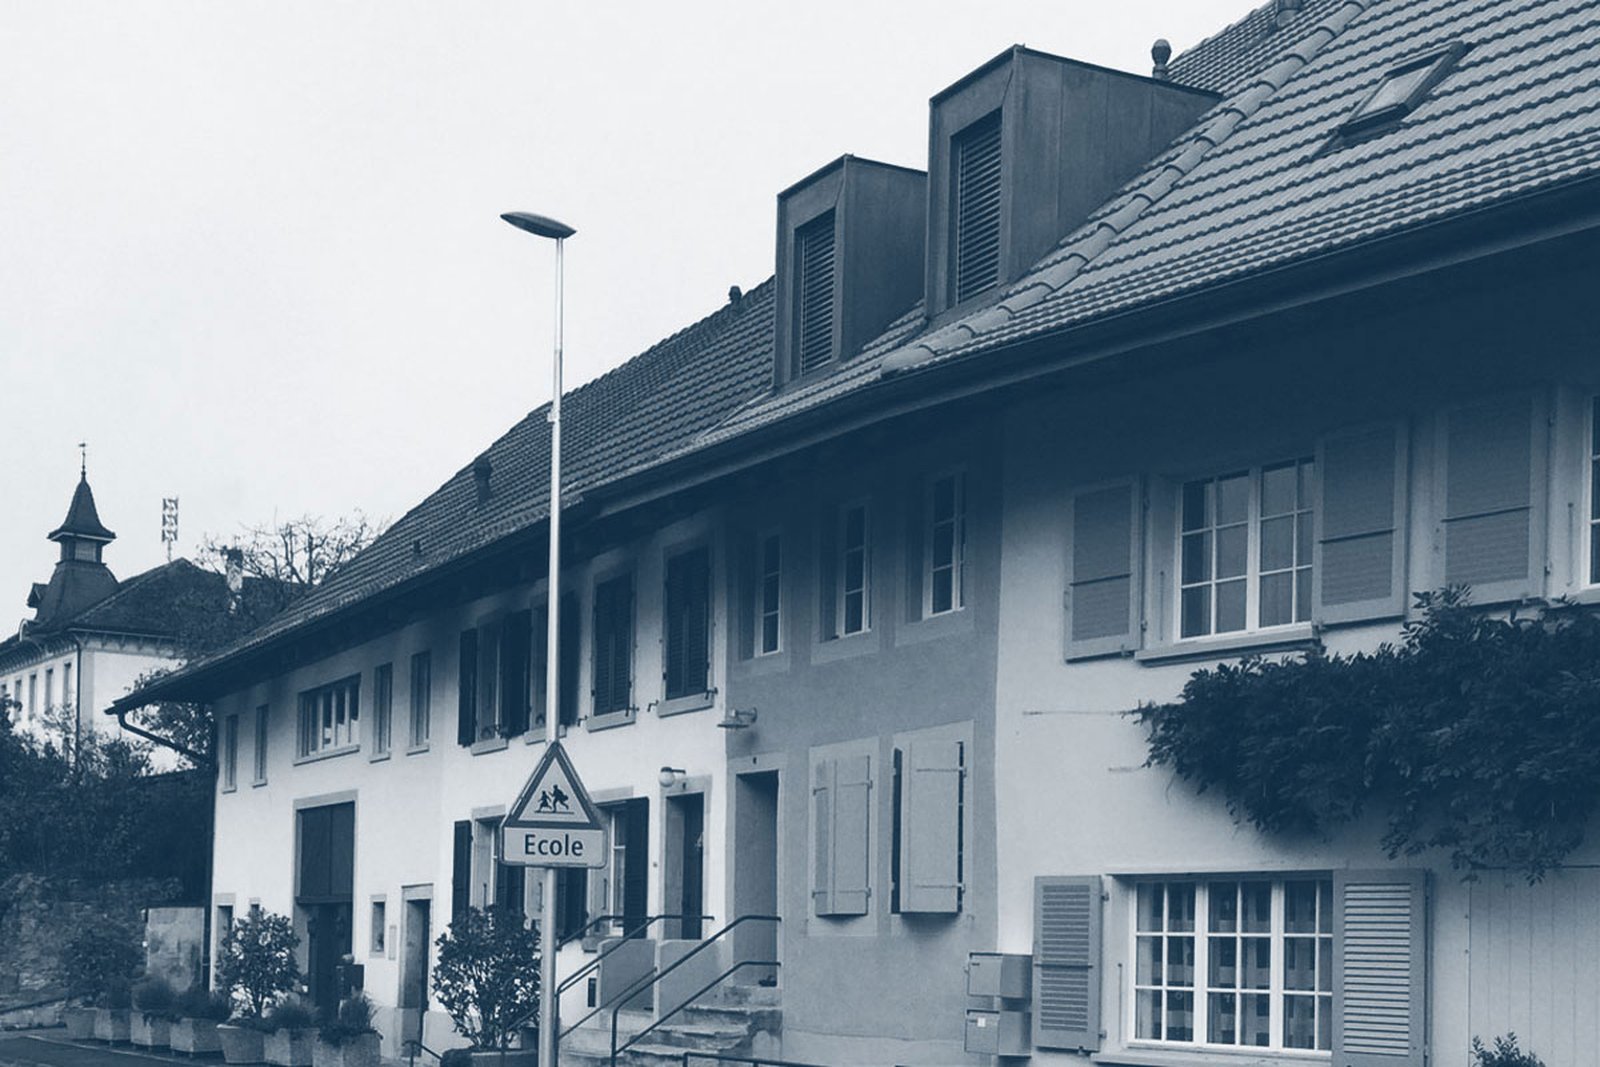 Umbau und Renovation
Altes Winzerhaus in Quart-Dessus in Lugnorre